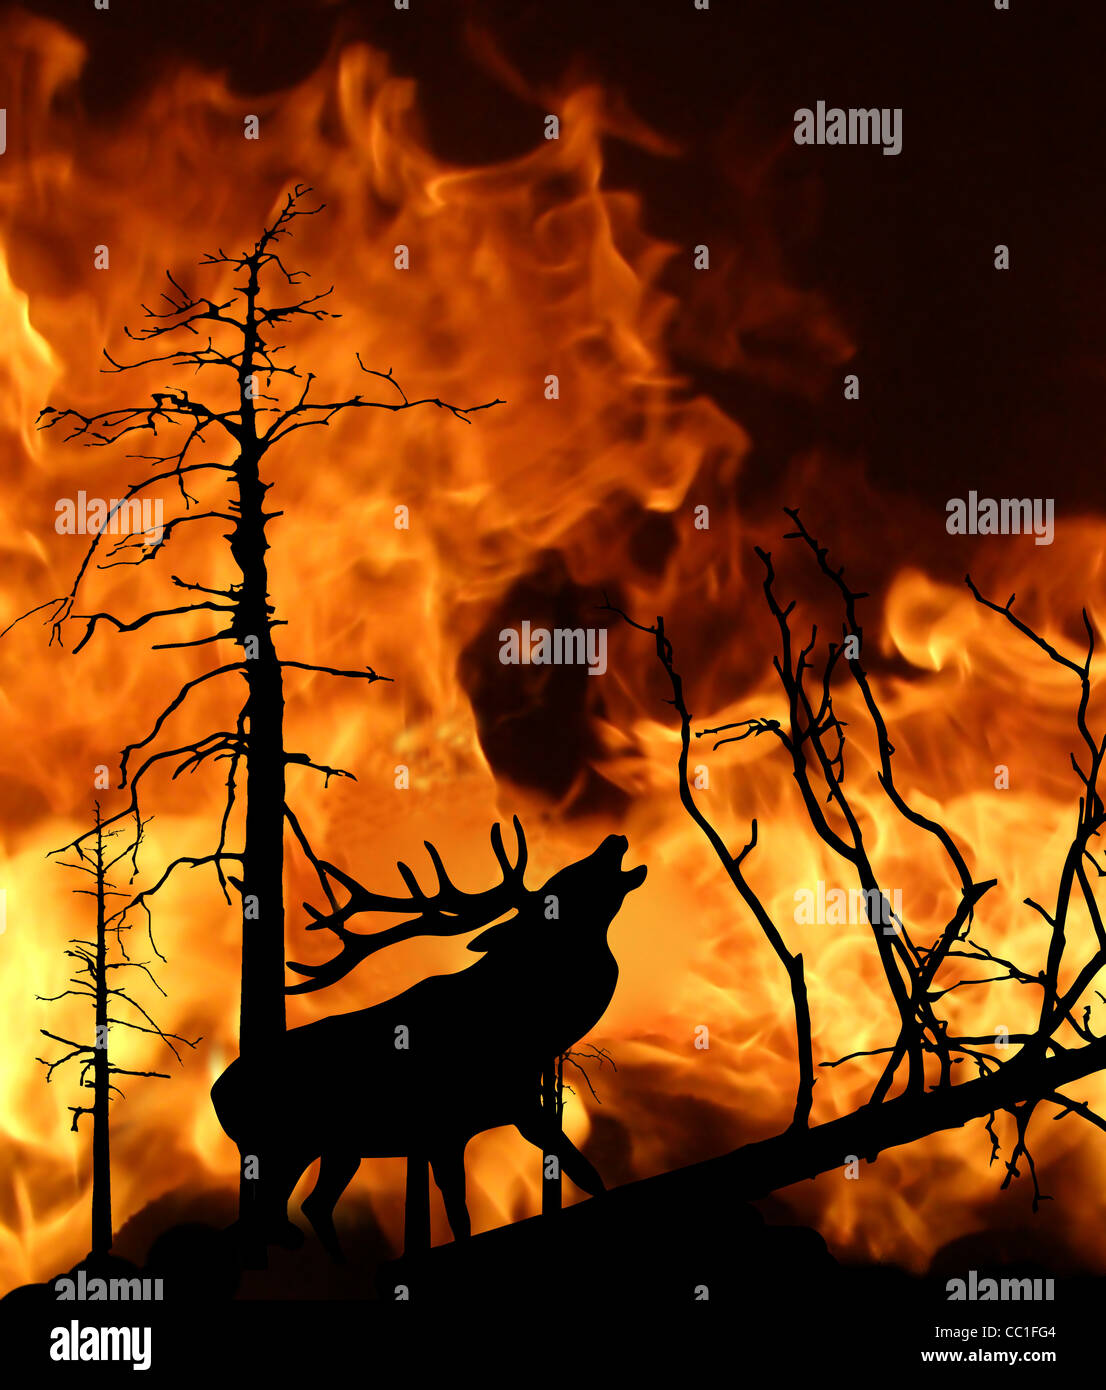 Illustrazione vettoriale del cervo in funzione lontano dal fuoco in legno Foto Stock